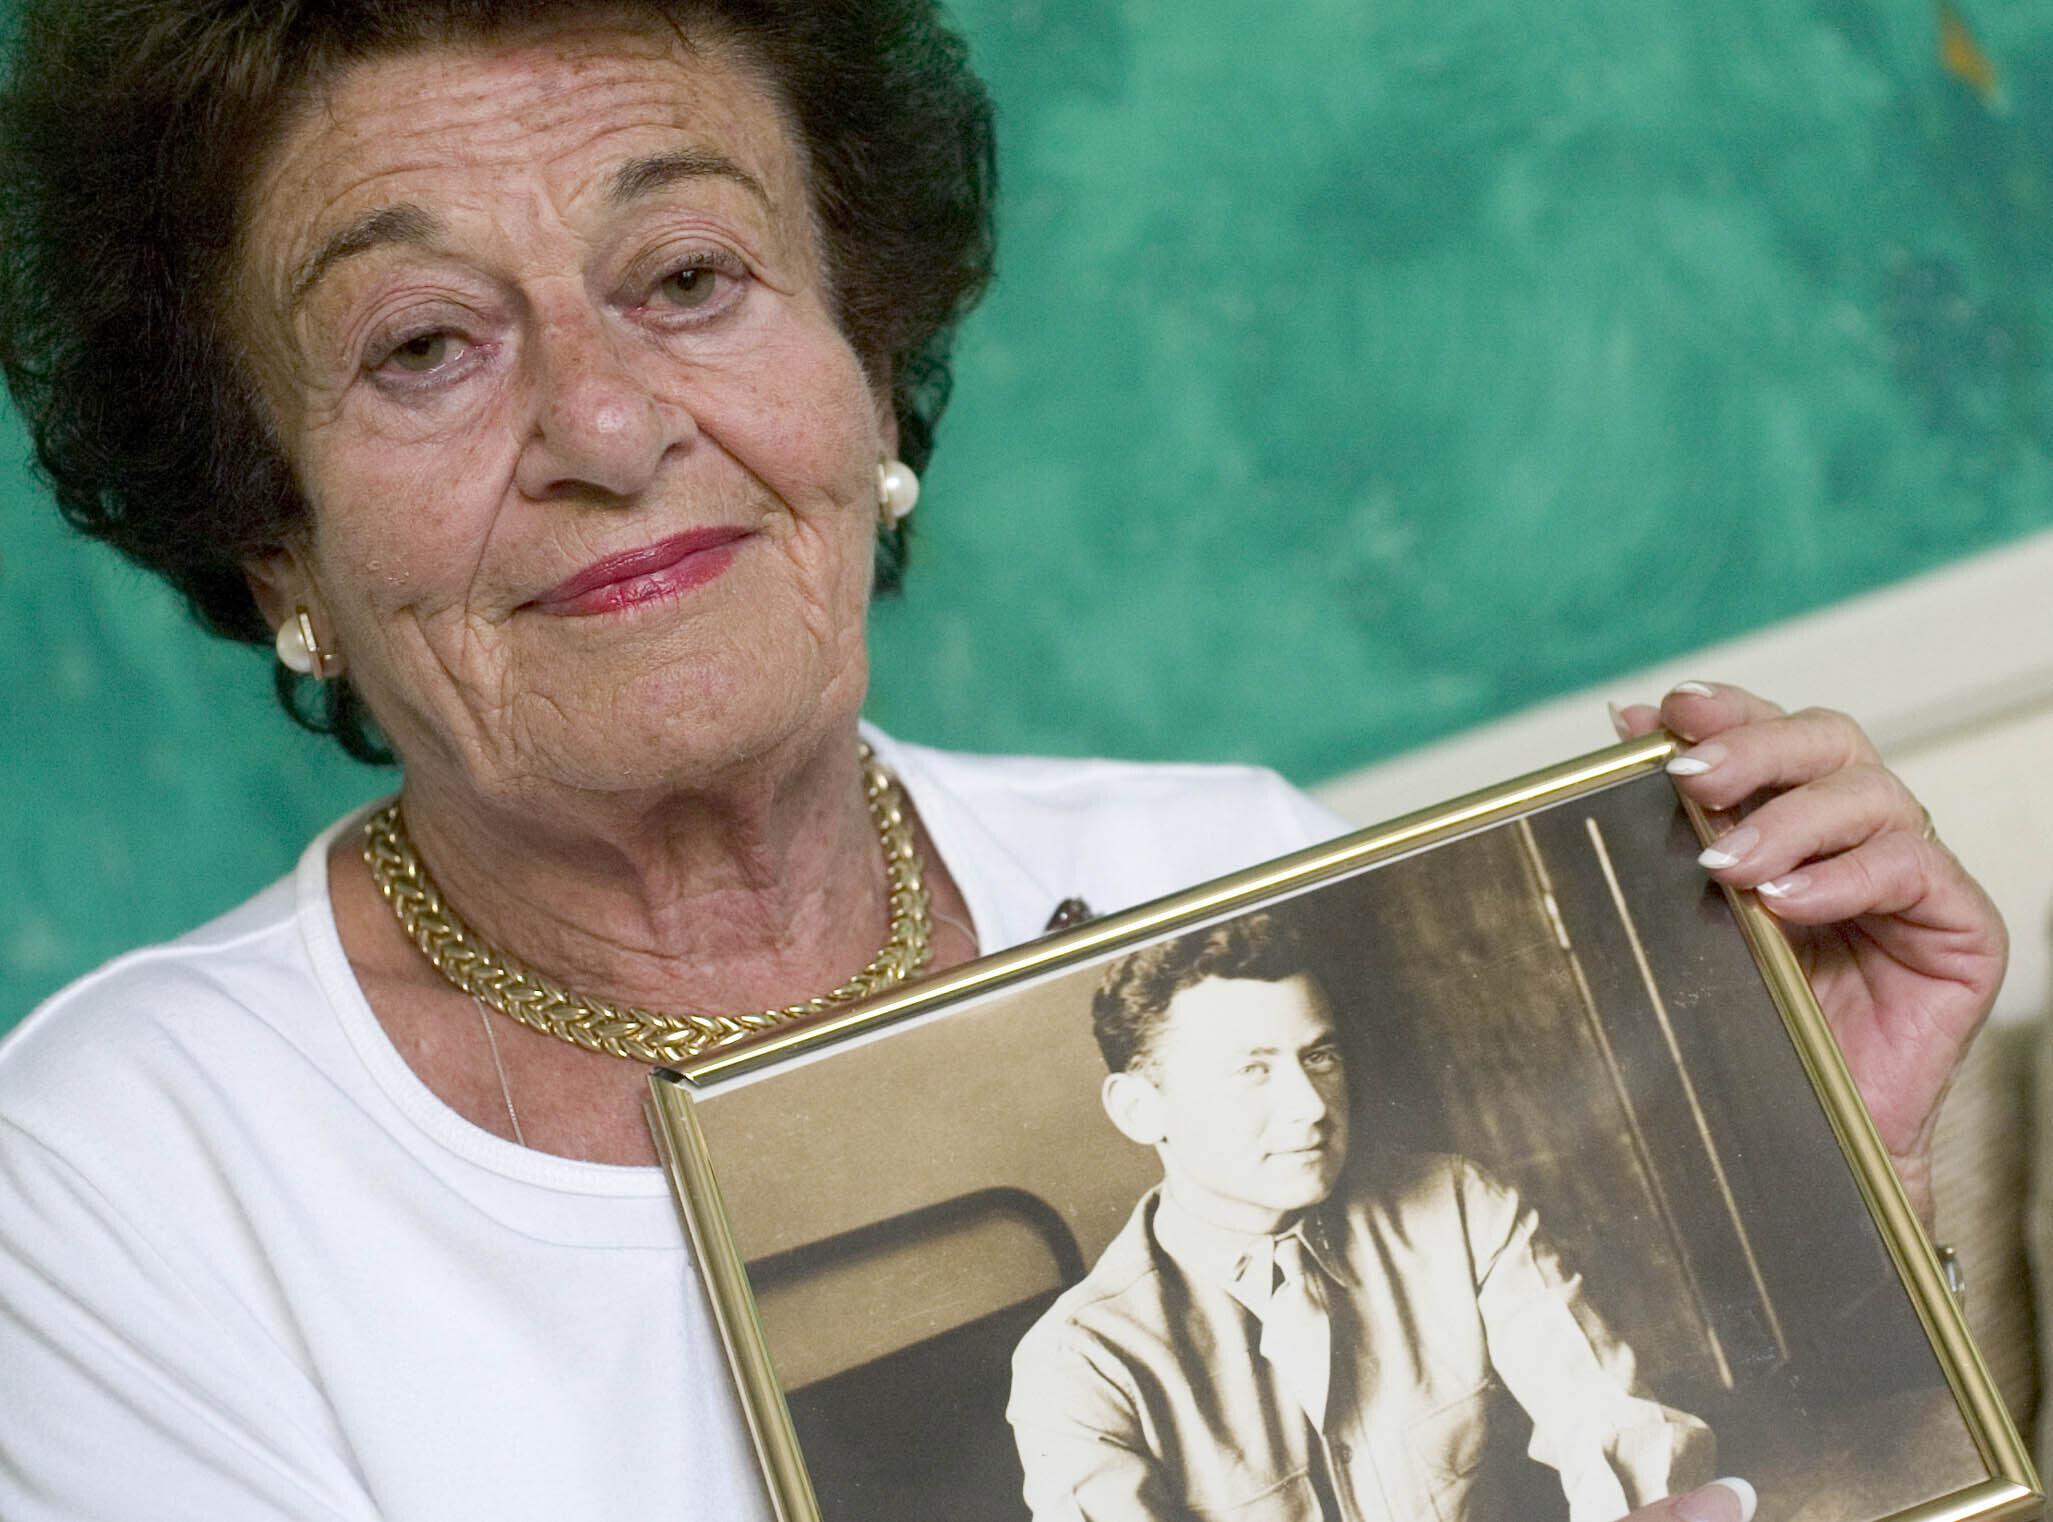 La autora y superviviente del Holocausto Gerda Weissmann Klein muere a los 97 años